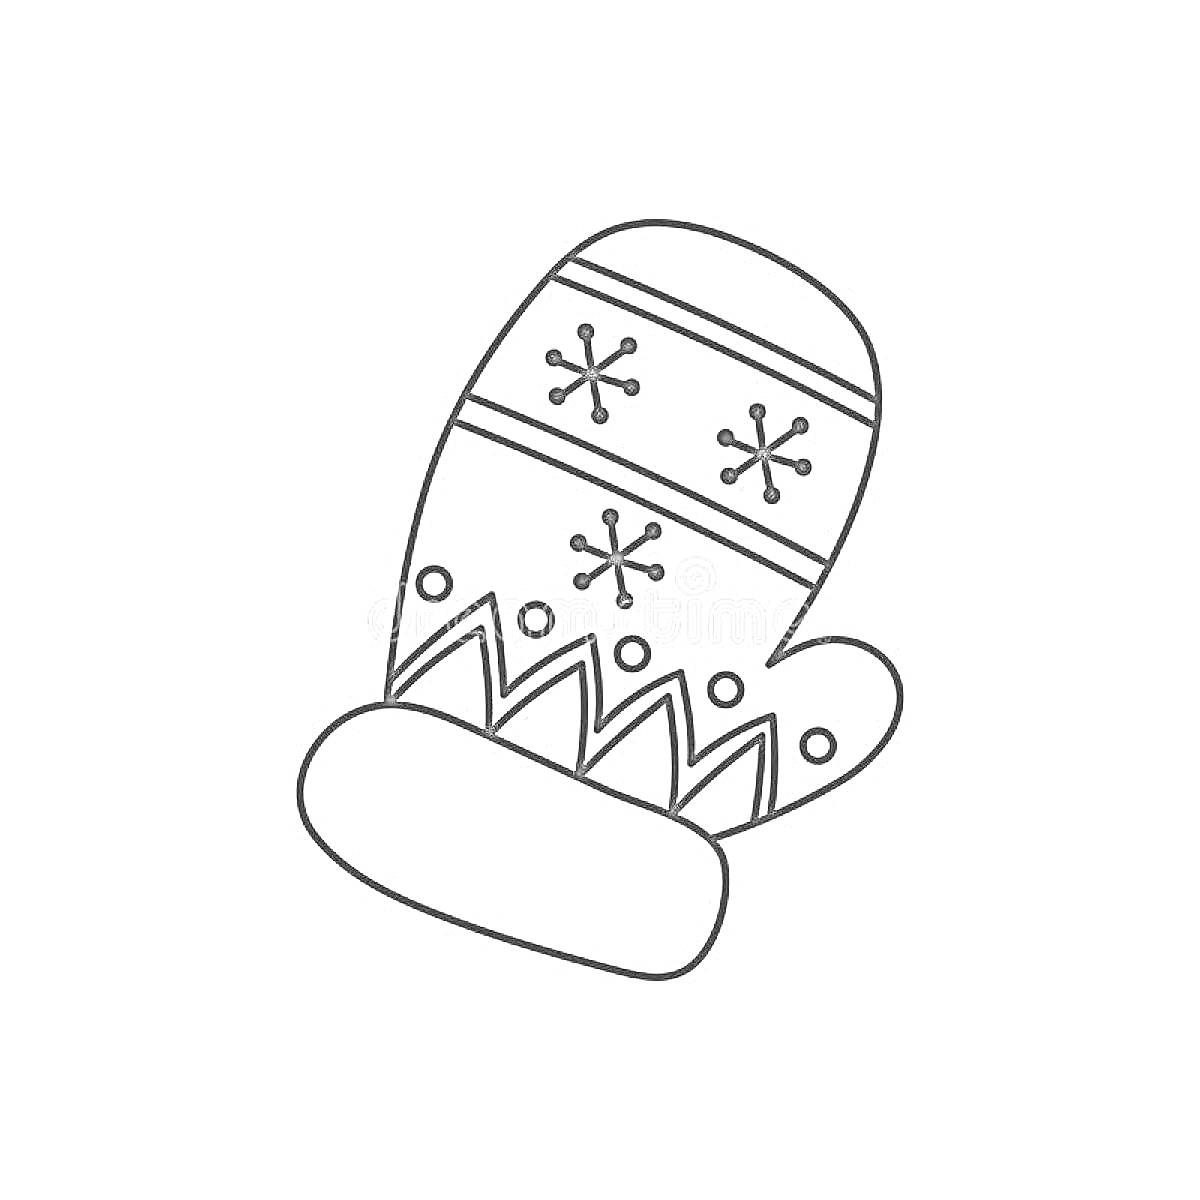 Раскраска Рукавичка с узором из снежинок и зигзагообразными линиями